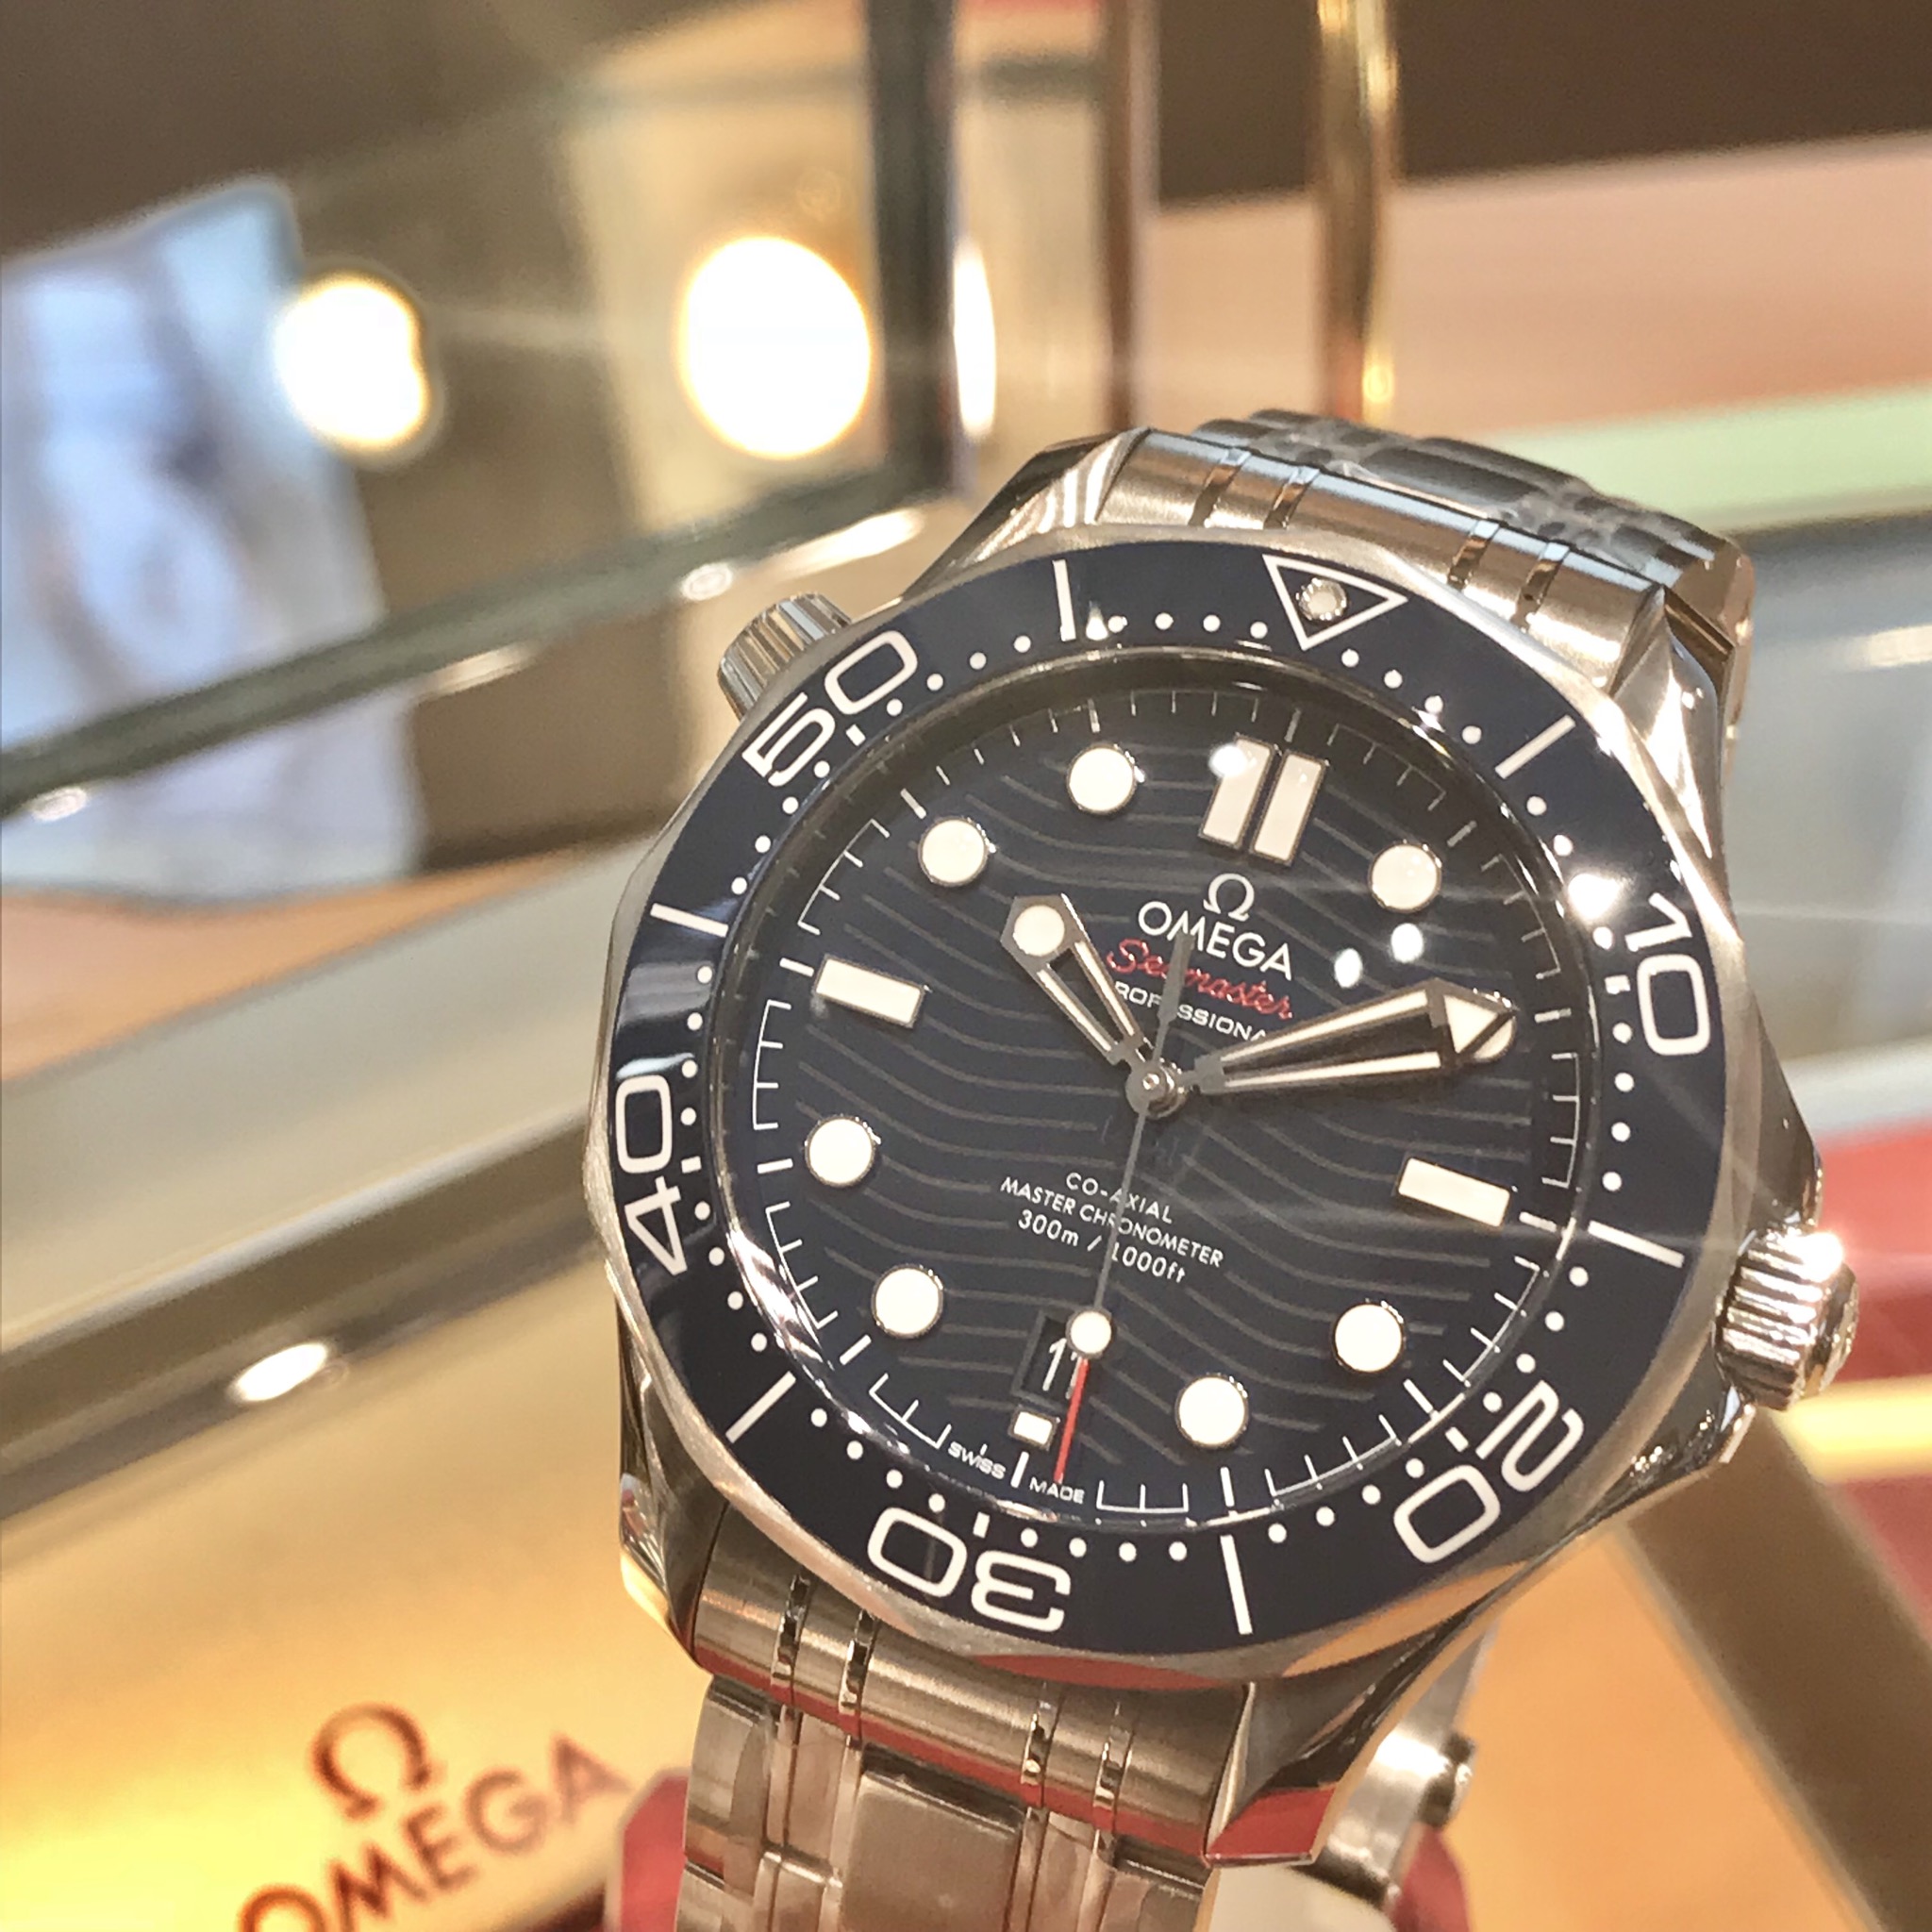 オメガ シーマスター ダイバー300m 人気の理由は性能とデザイン 長野県の高級腕時計専門店 一真堂 Staff Blog